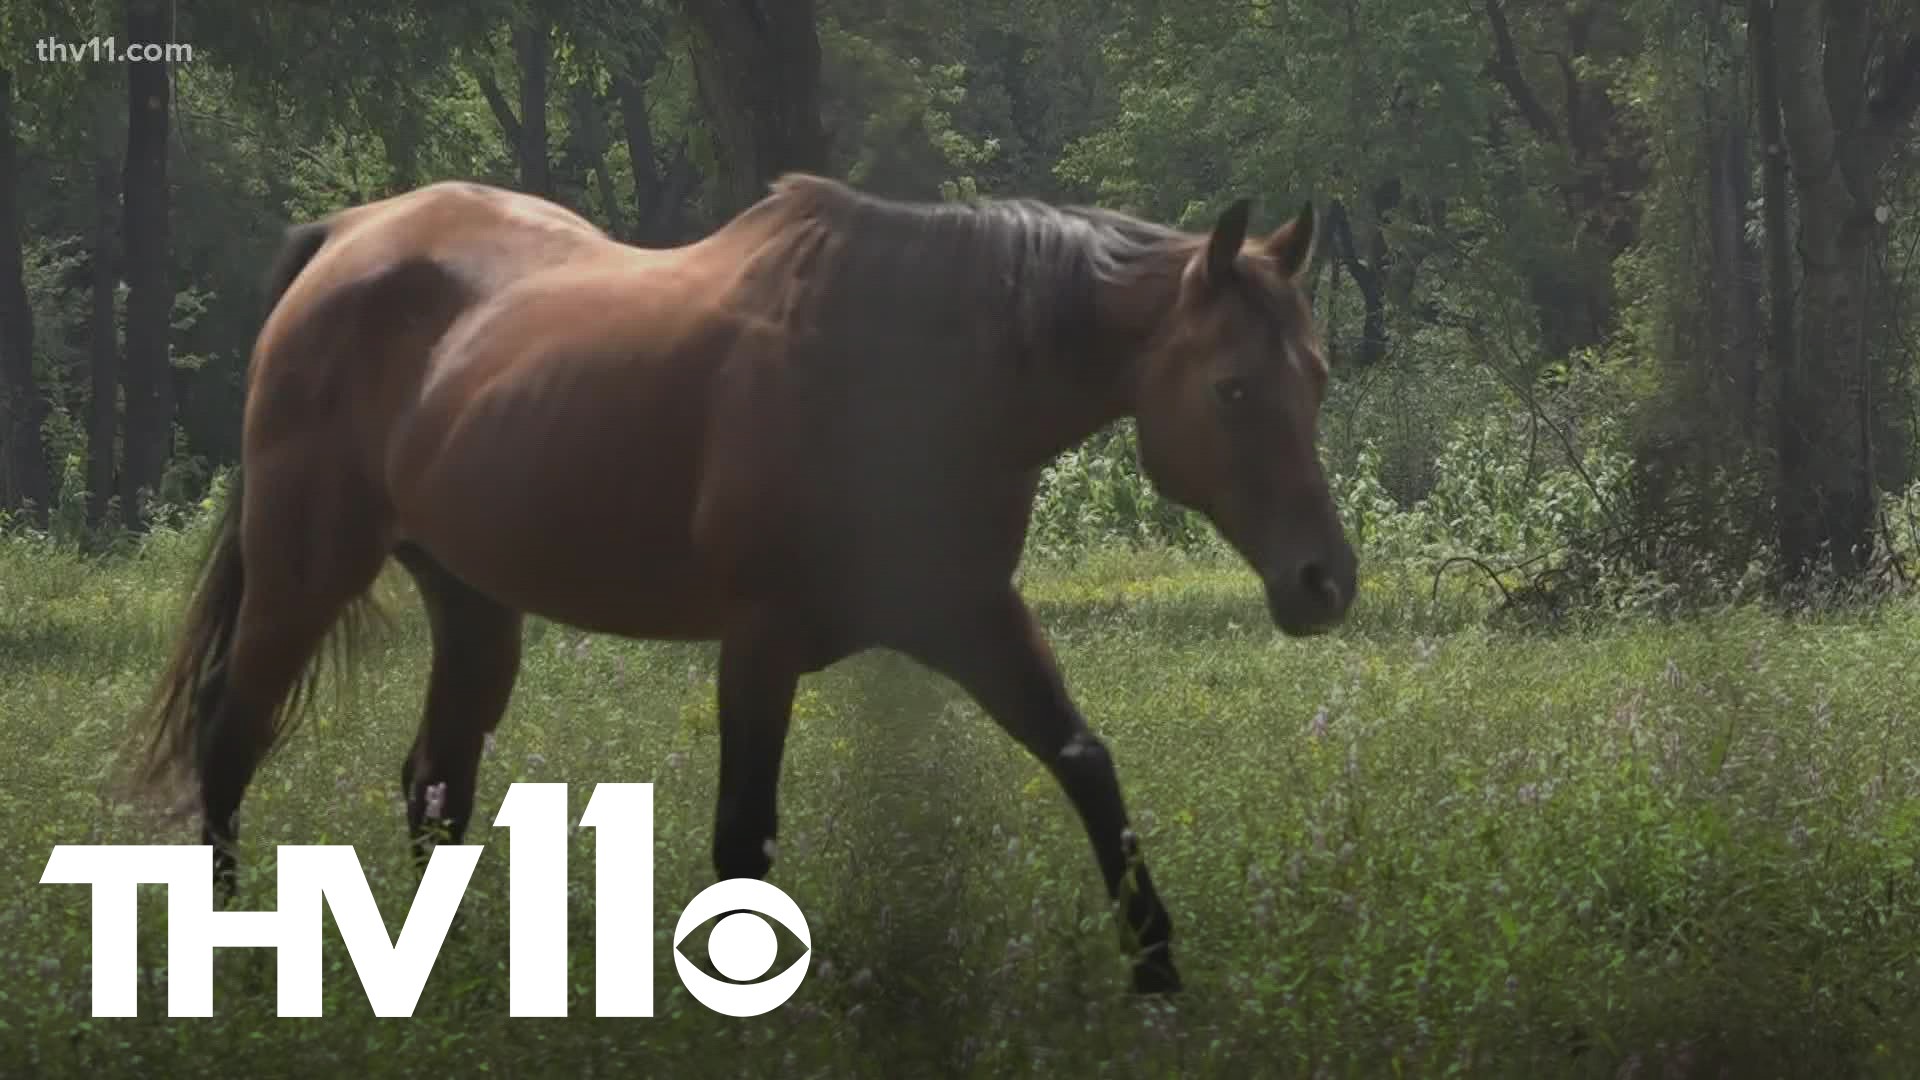 Arkansas horse owner warns of disease after 3 of her horses die